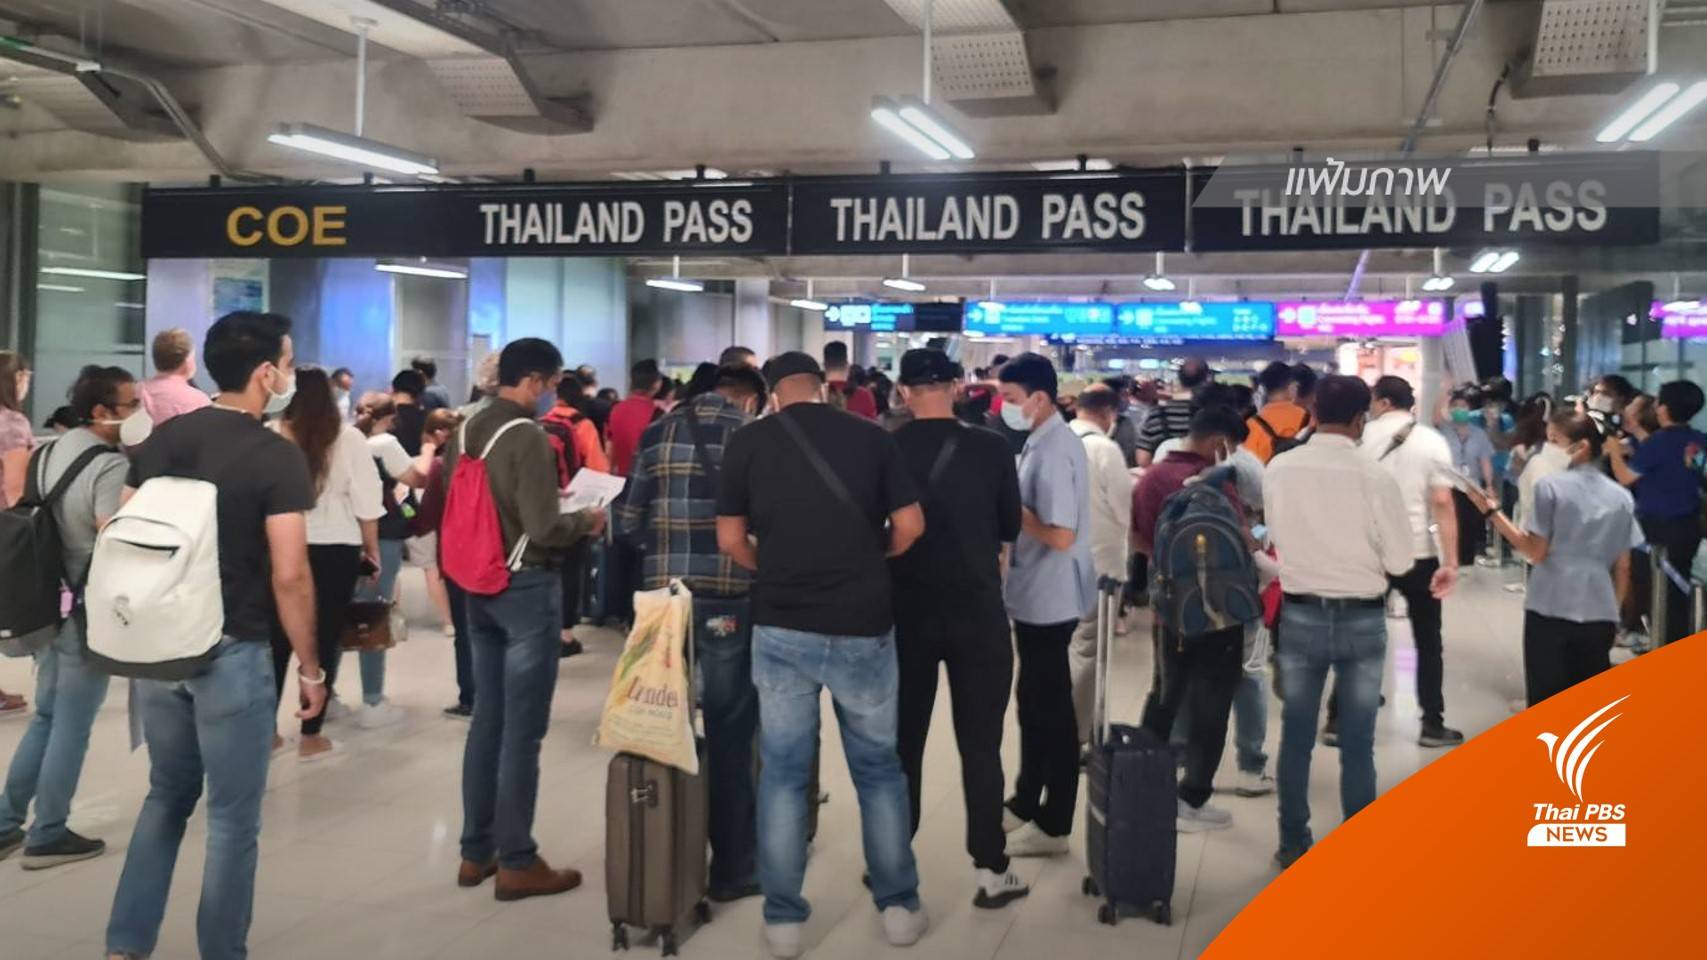 "นายกฯ" มั่นใจไทยพร้อมรับนักท่องเที่ยว หลังยกเว้น Thailand Pass  1 ก.ค.นี้  